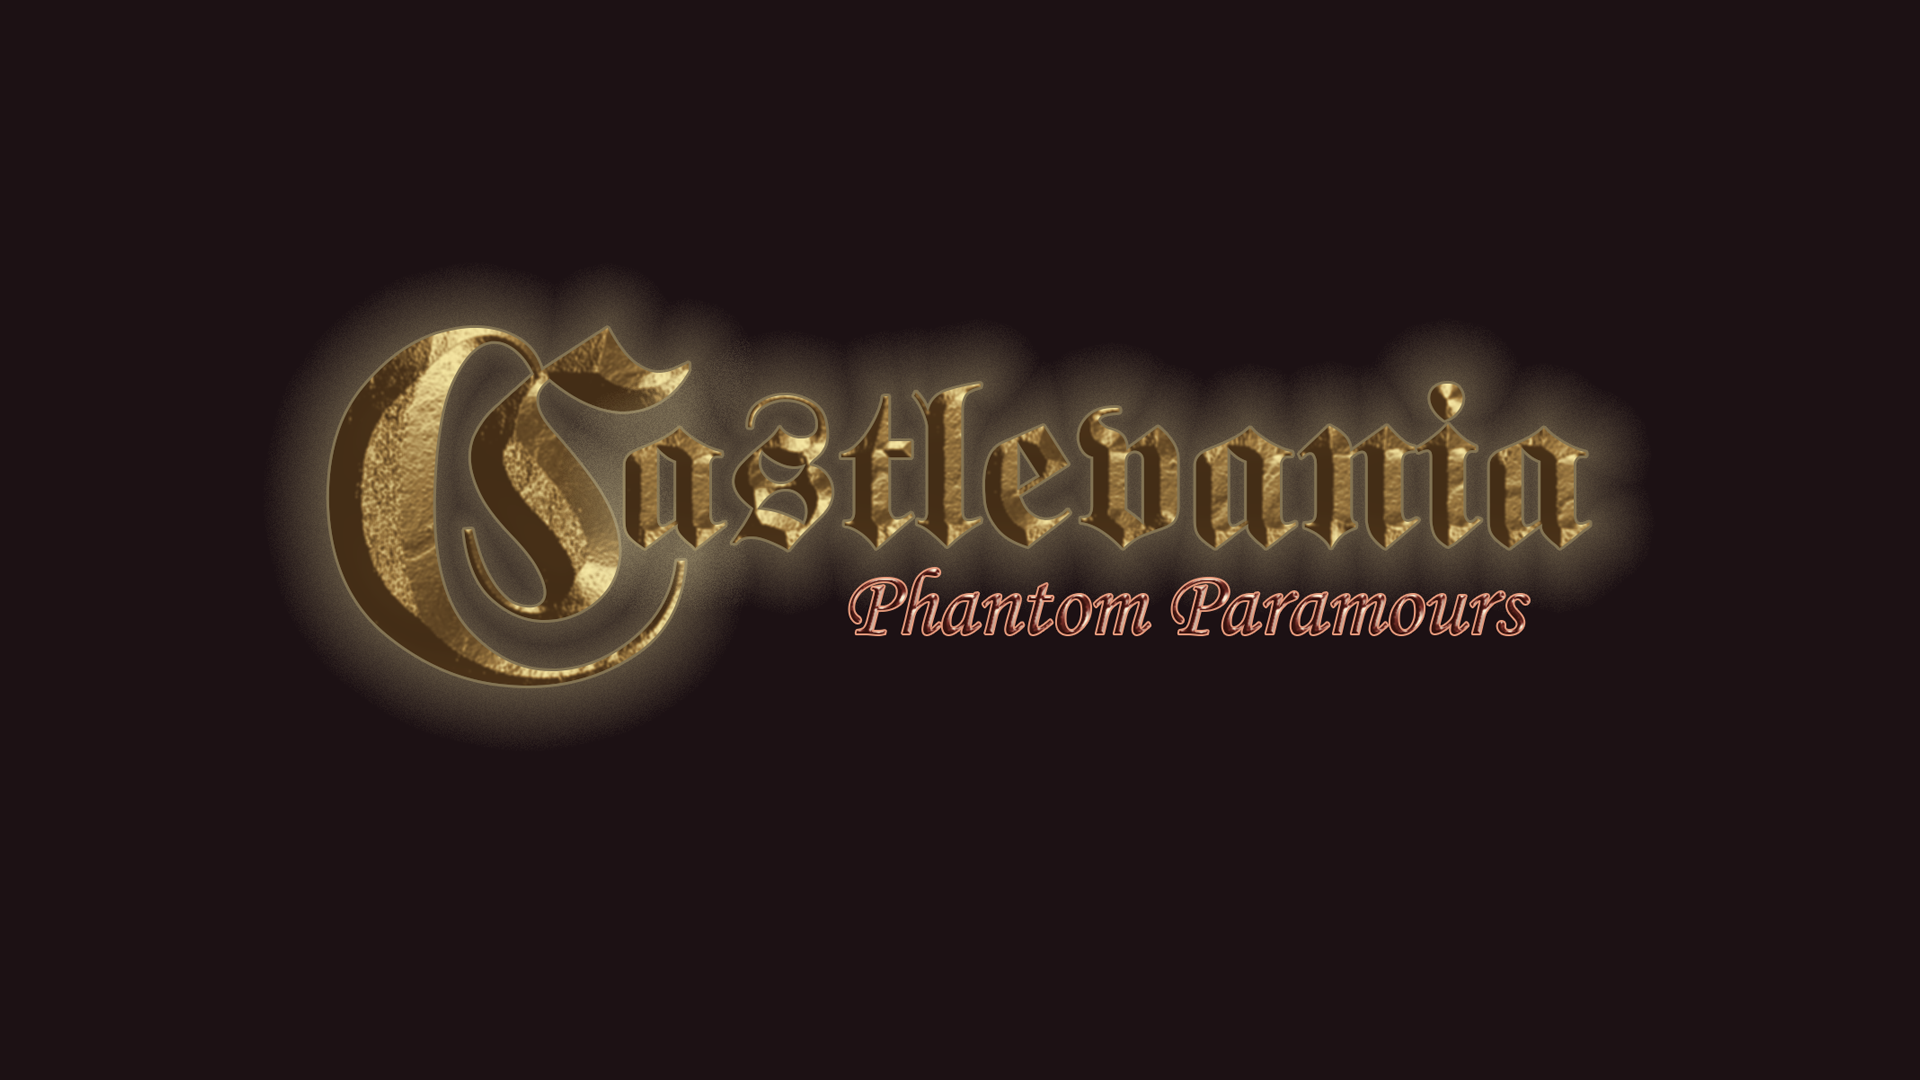 Castlevania: Phantom Paramours [Demo]